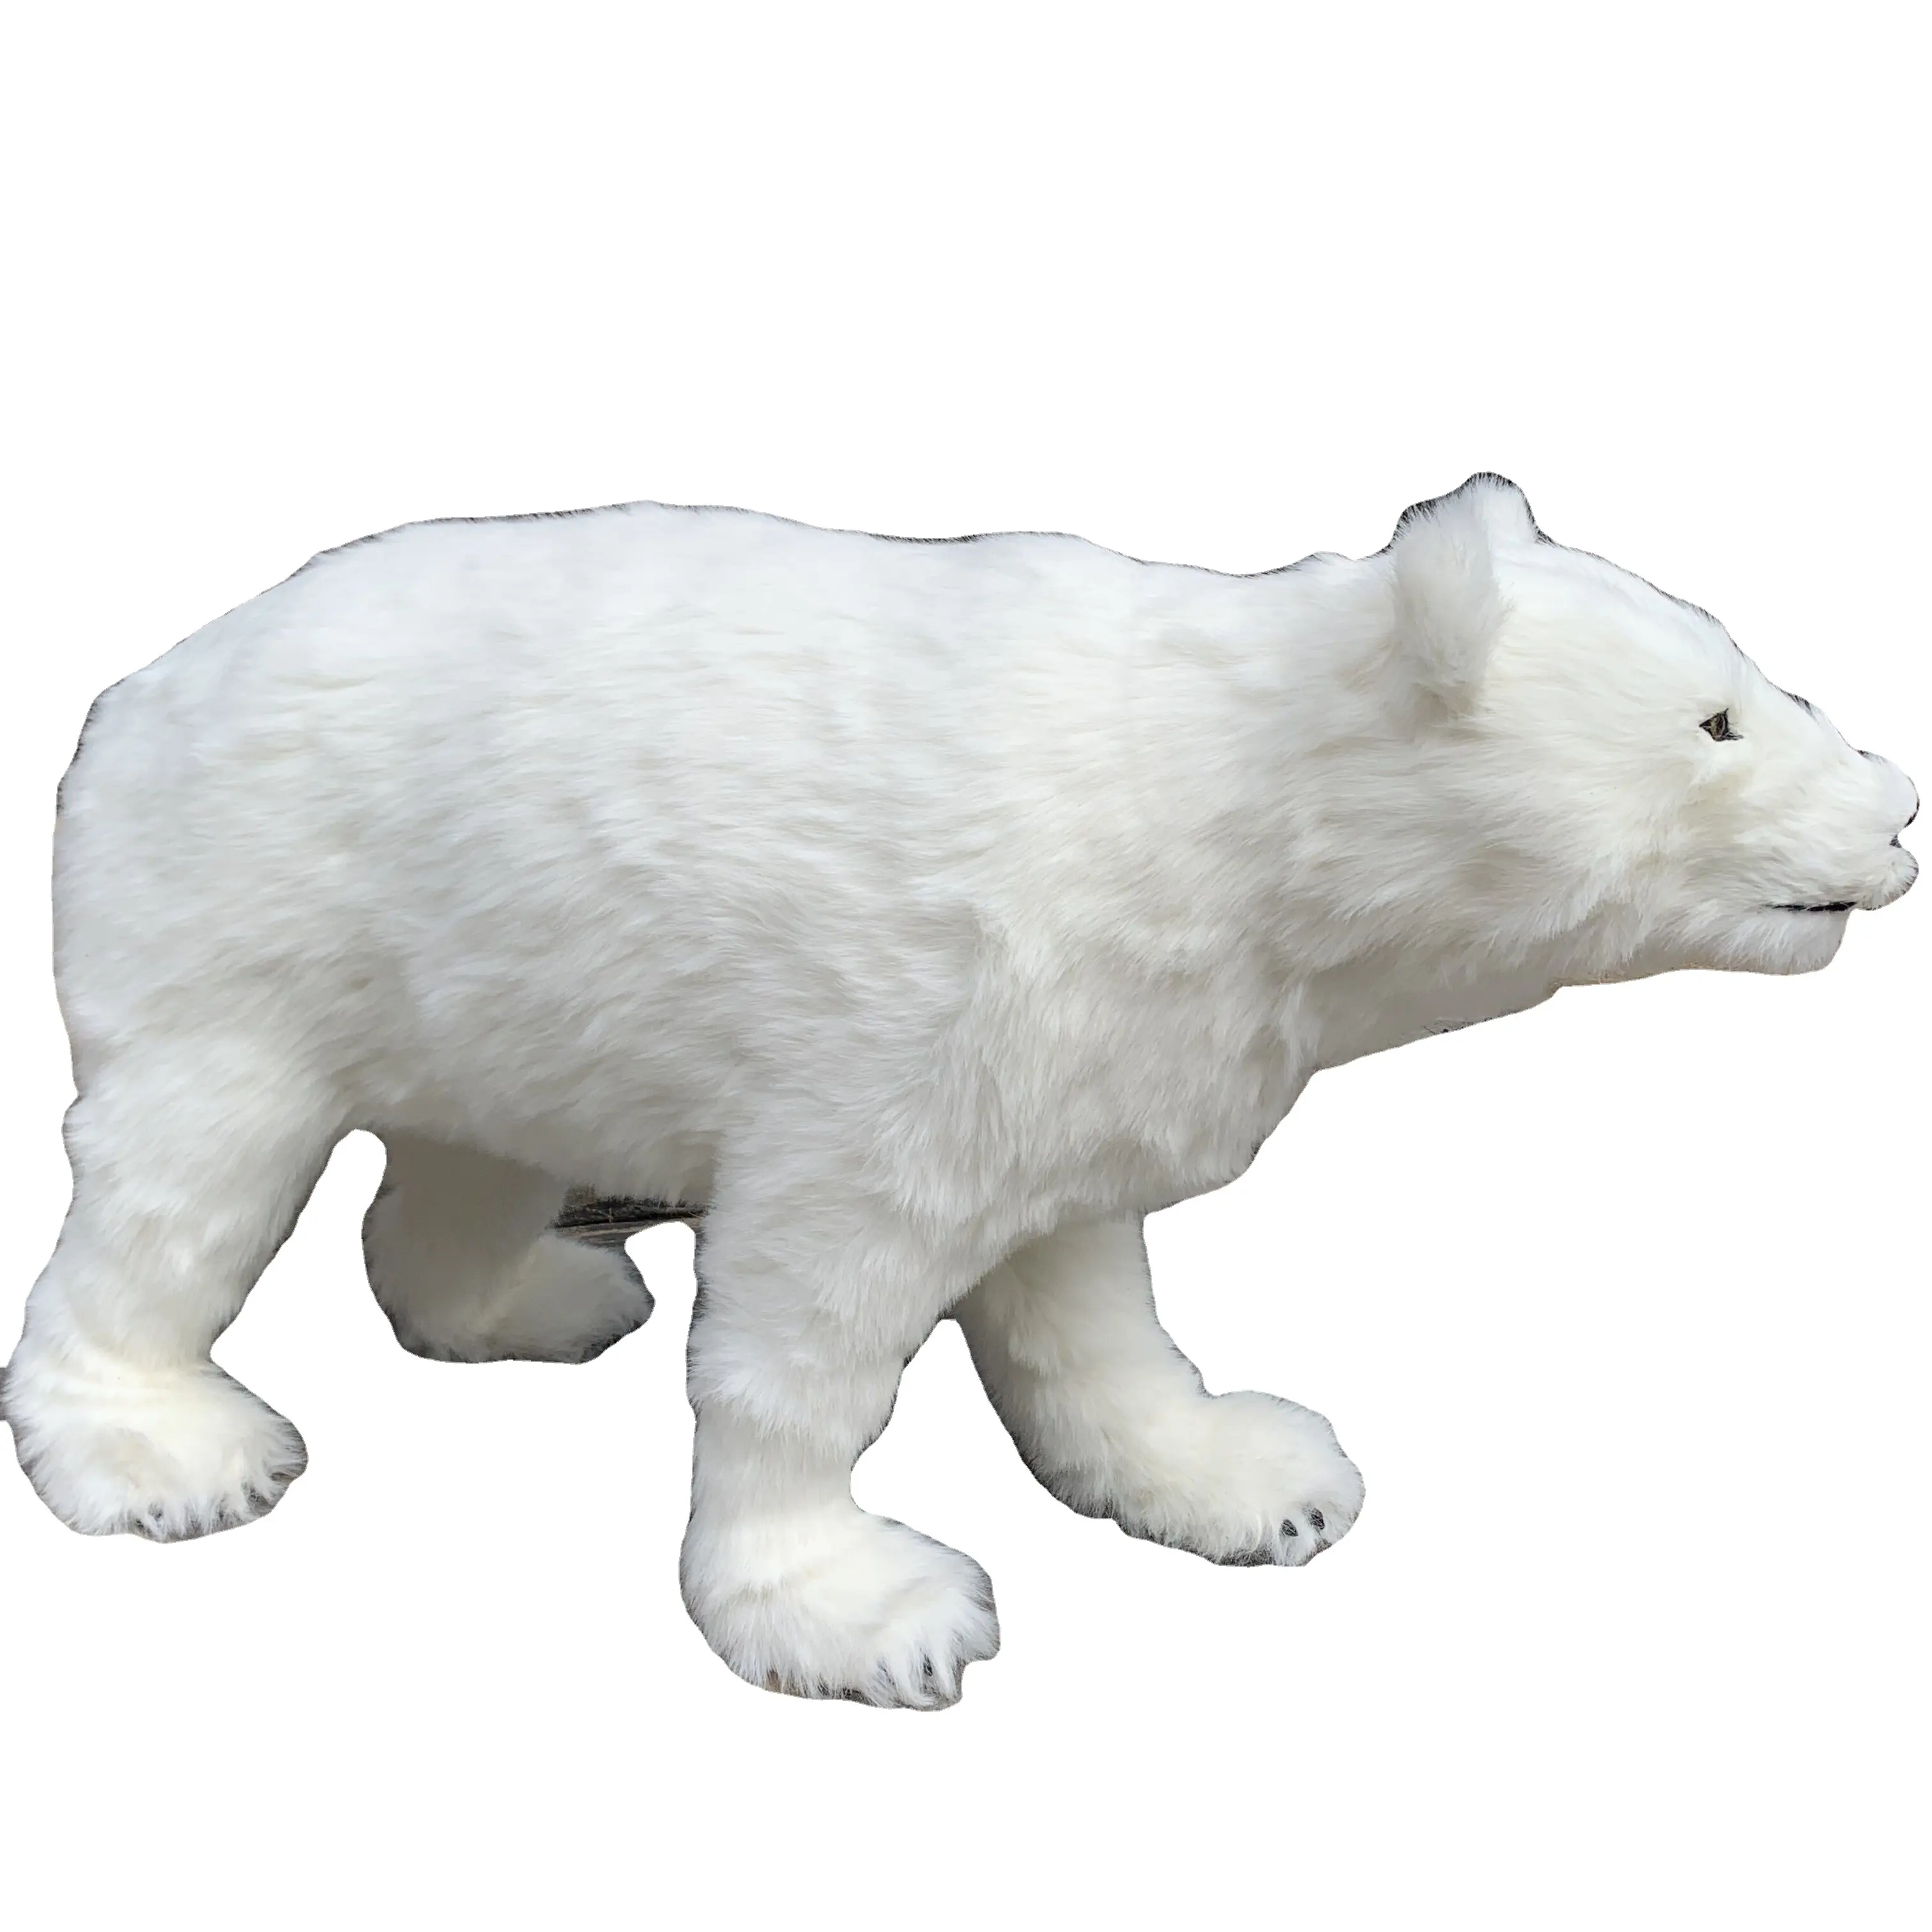 Urso polar estátua de 100cm de vida, barato, grande urso branco decorativo ao ar livre